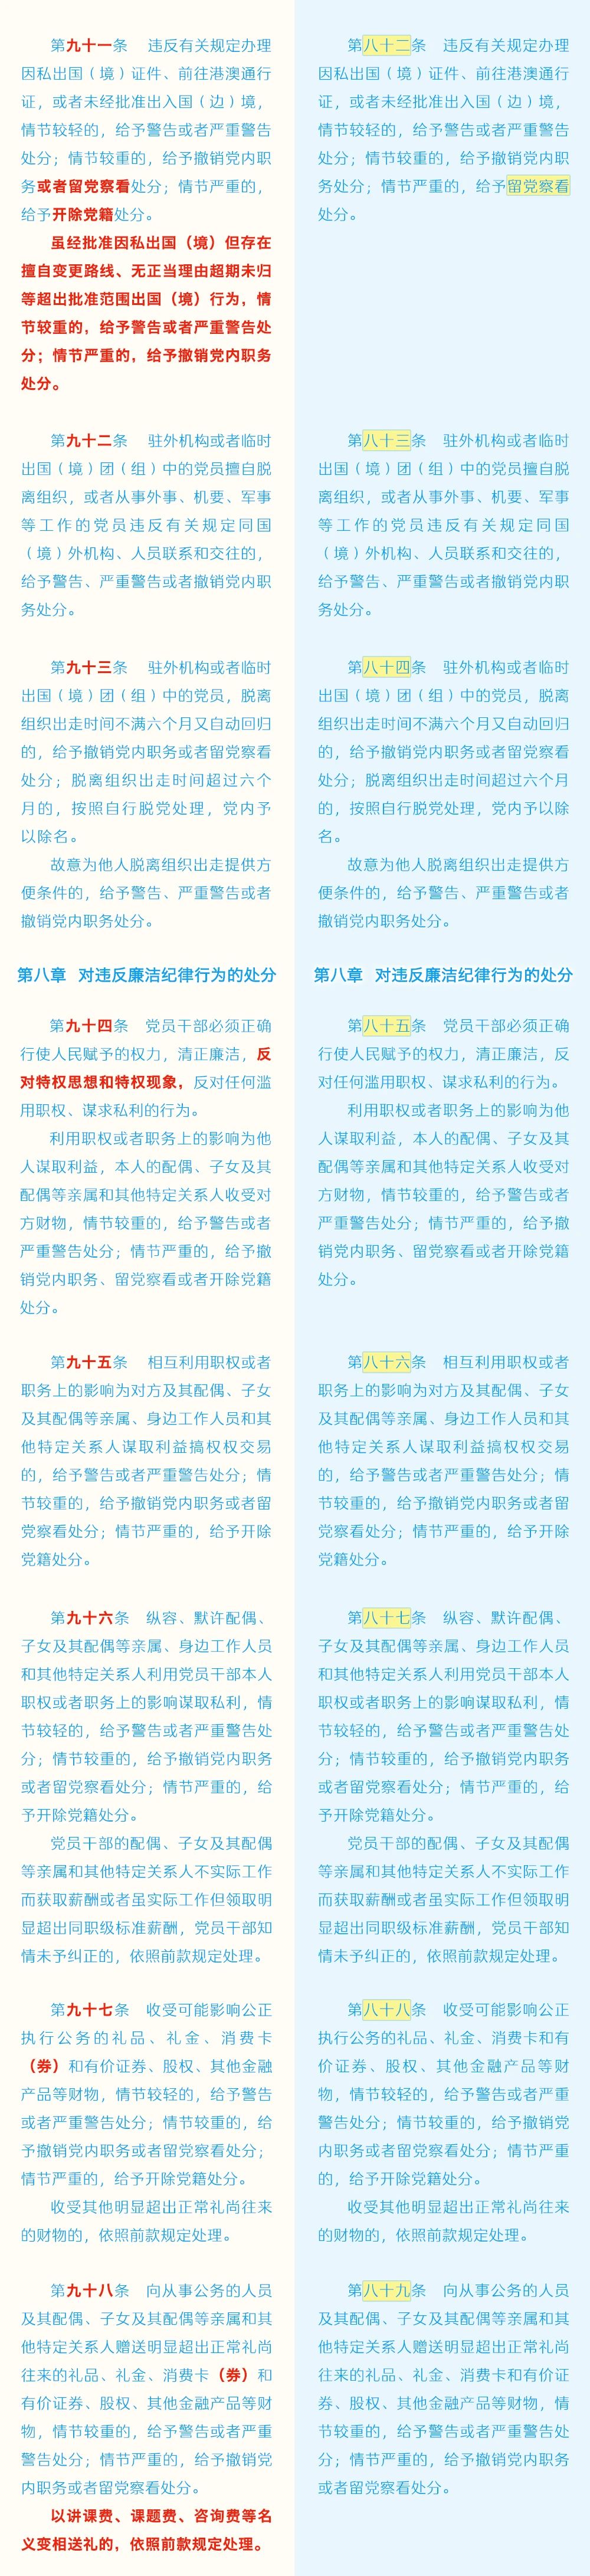 《中国共产党纪律处分条例》修订条文对照表14.jpg